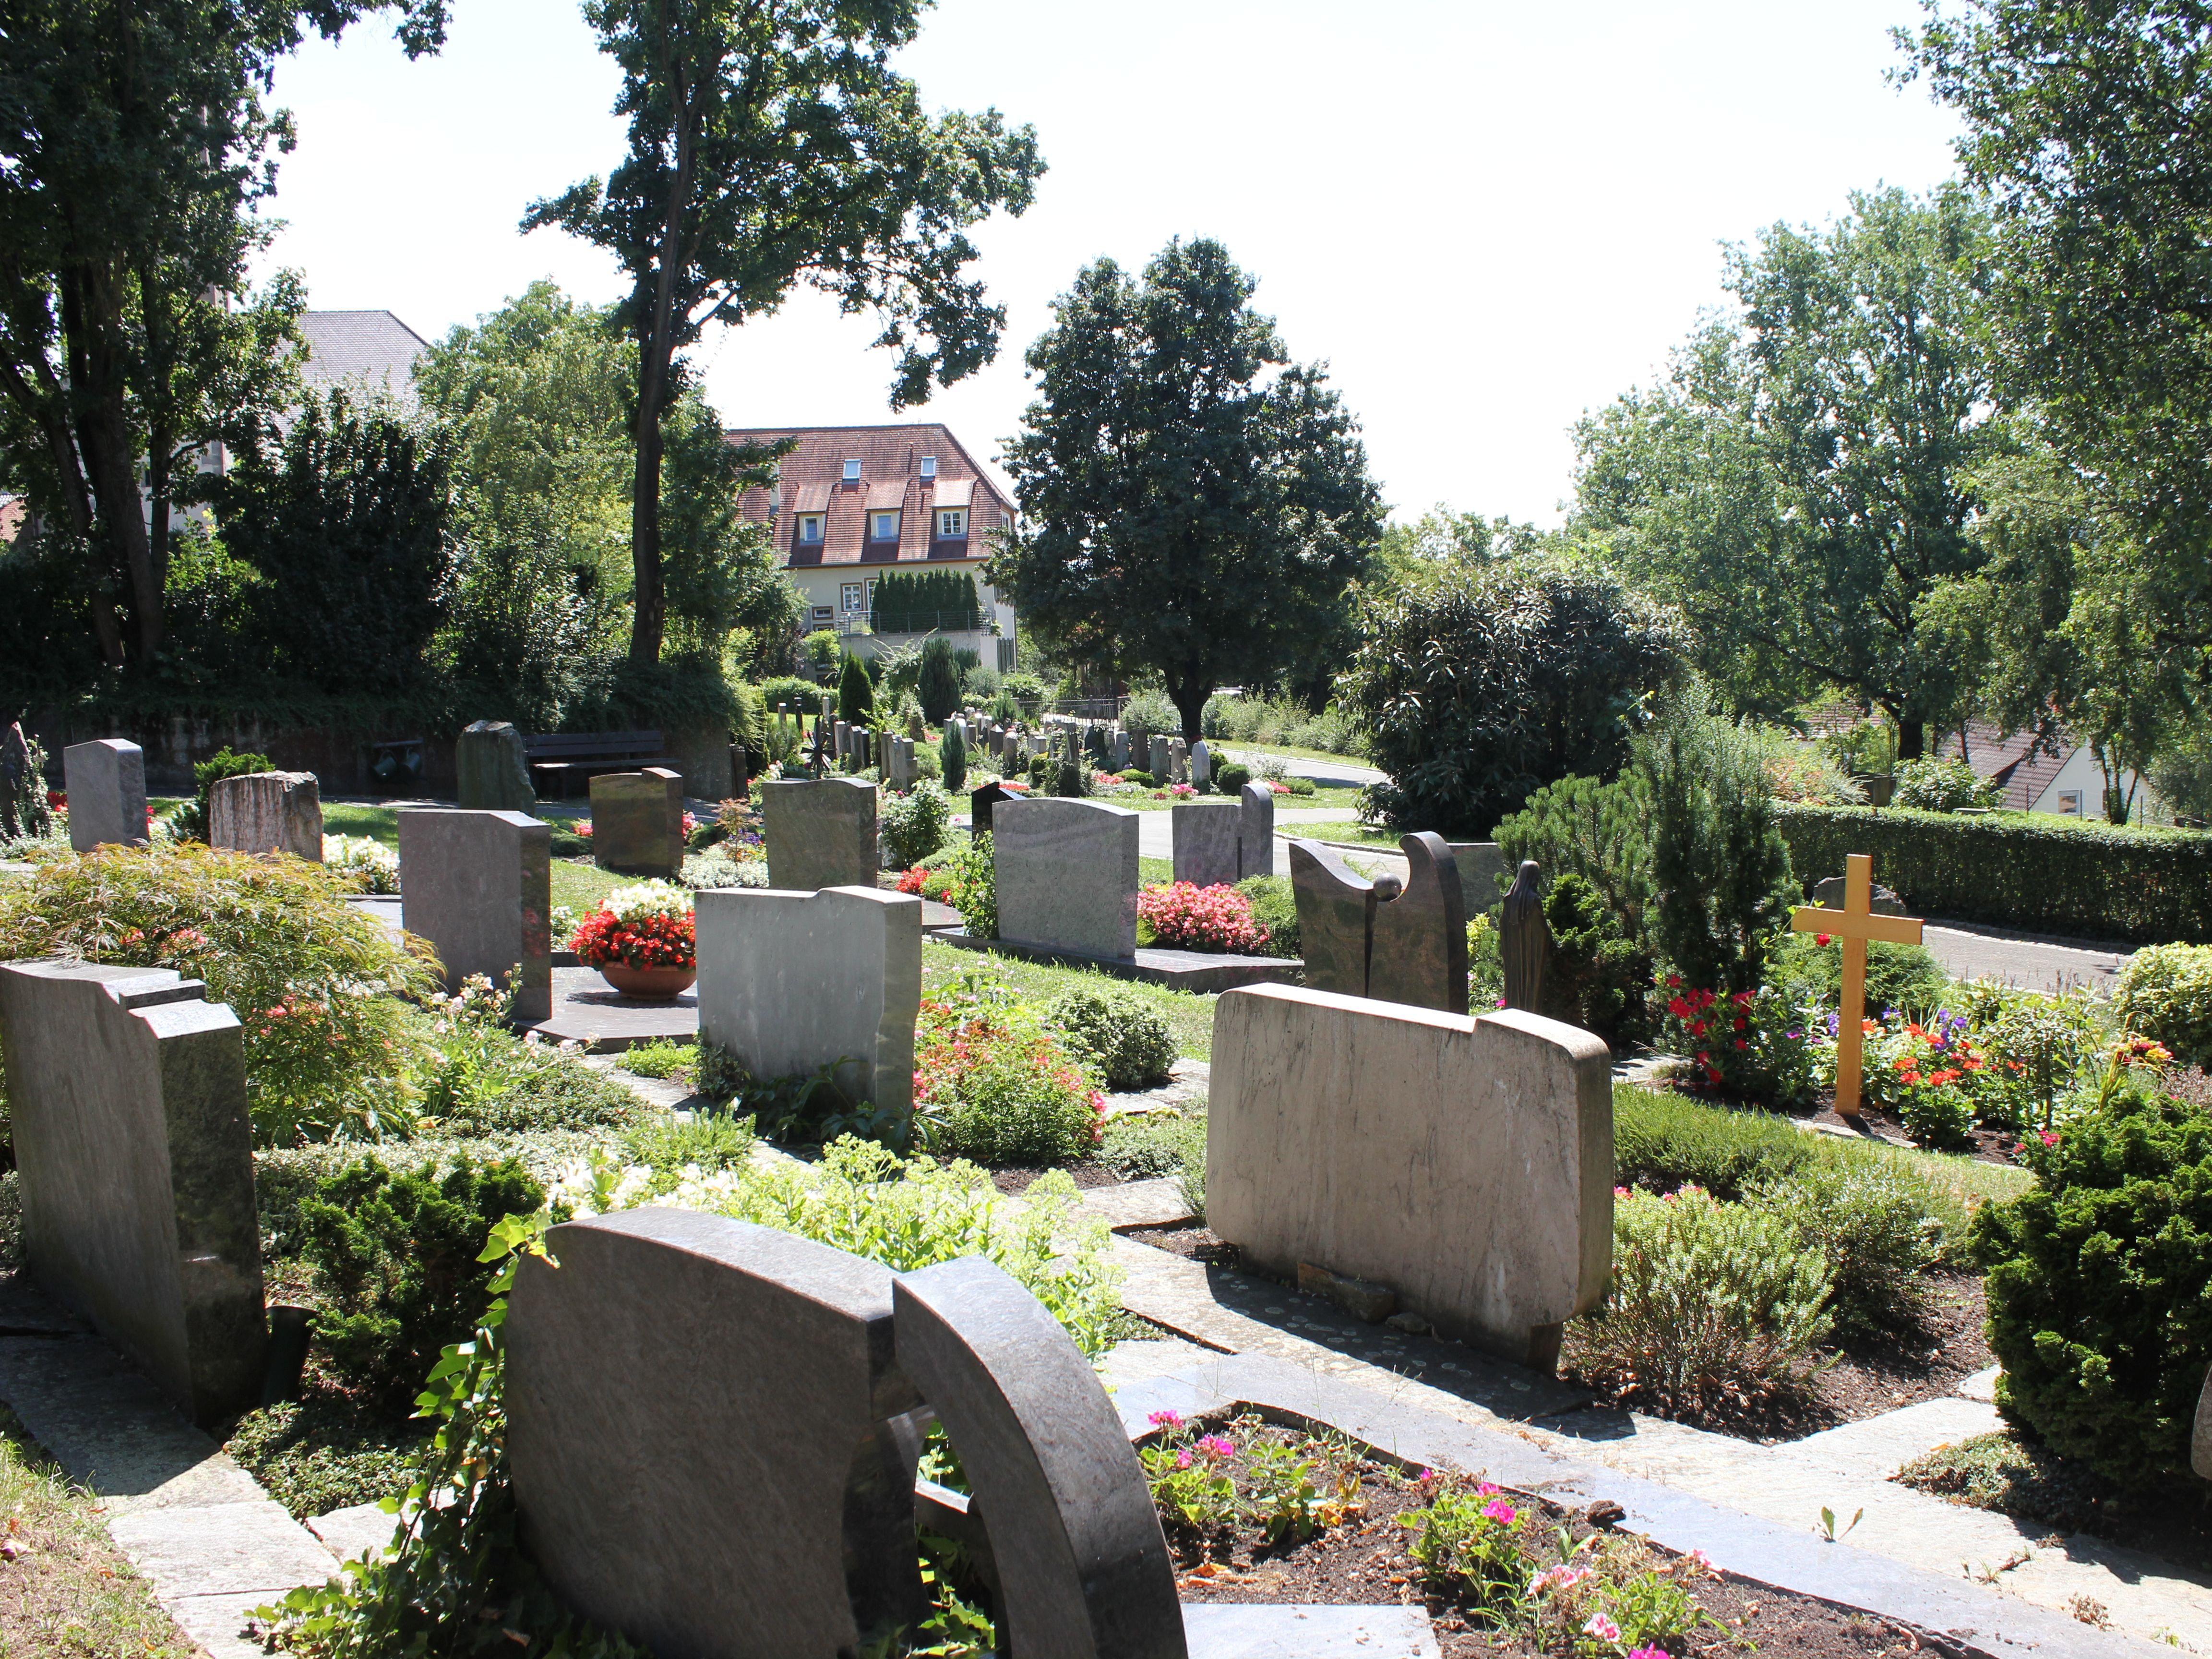 
    
        
                
                        Friedhof Bempflingen
                    
            
    
